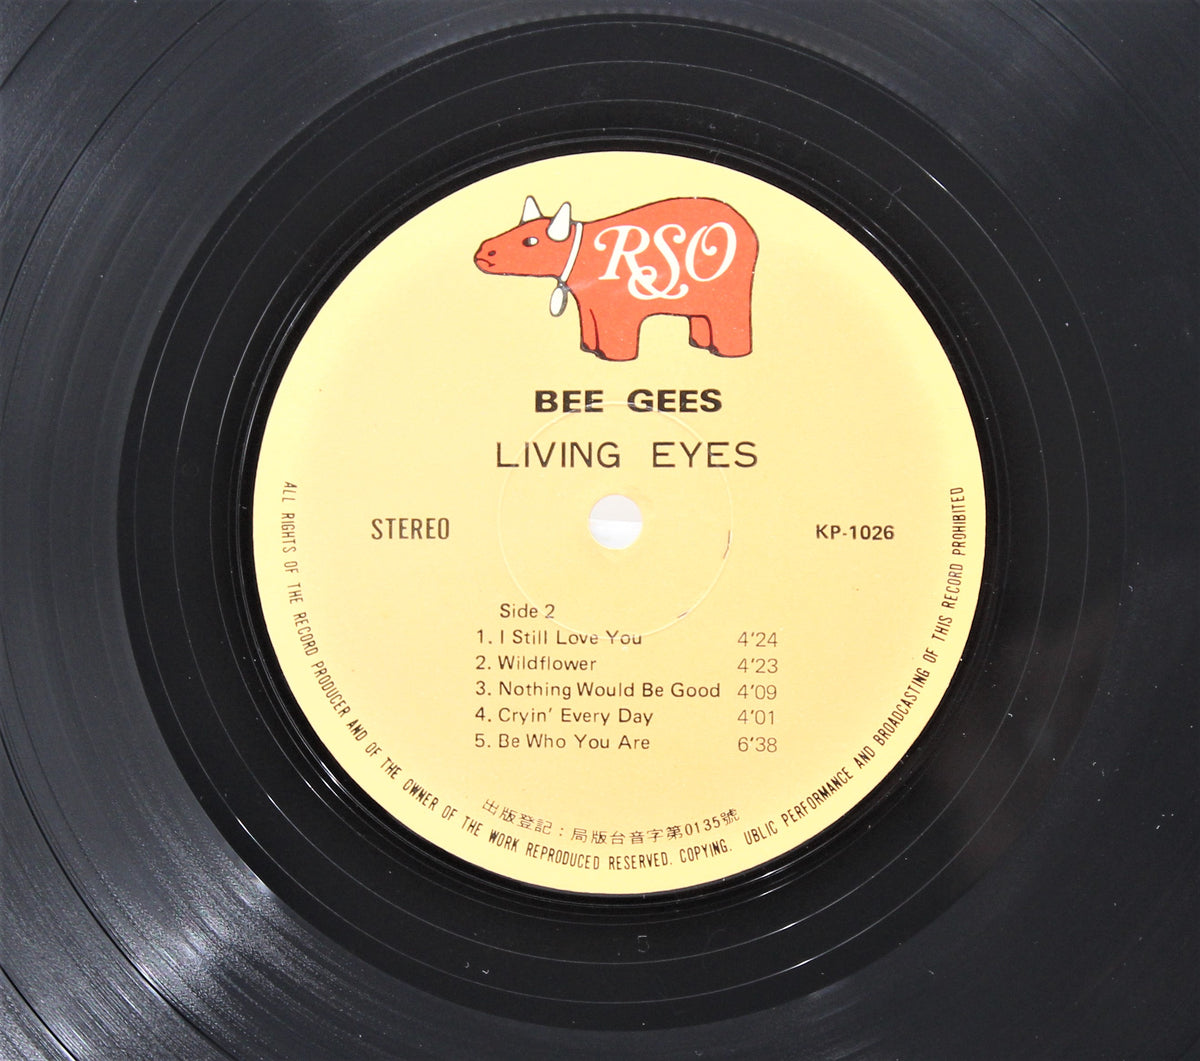 Bee Gees, Living Eyes, Taiwan 1981 (1532)